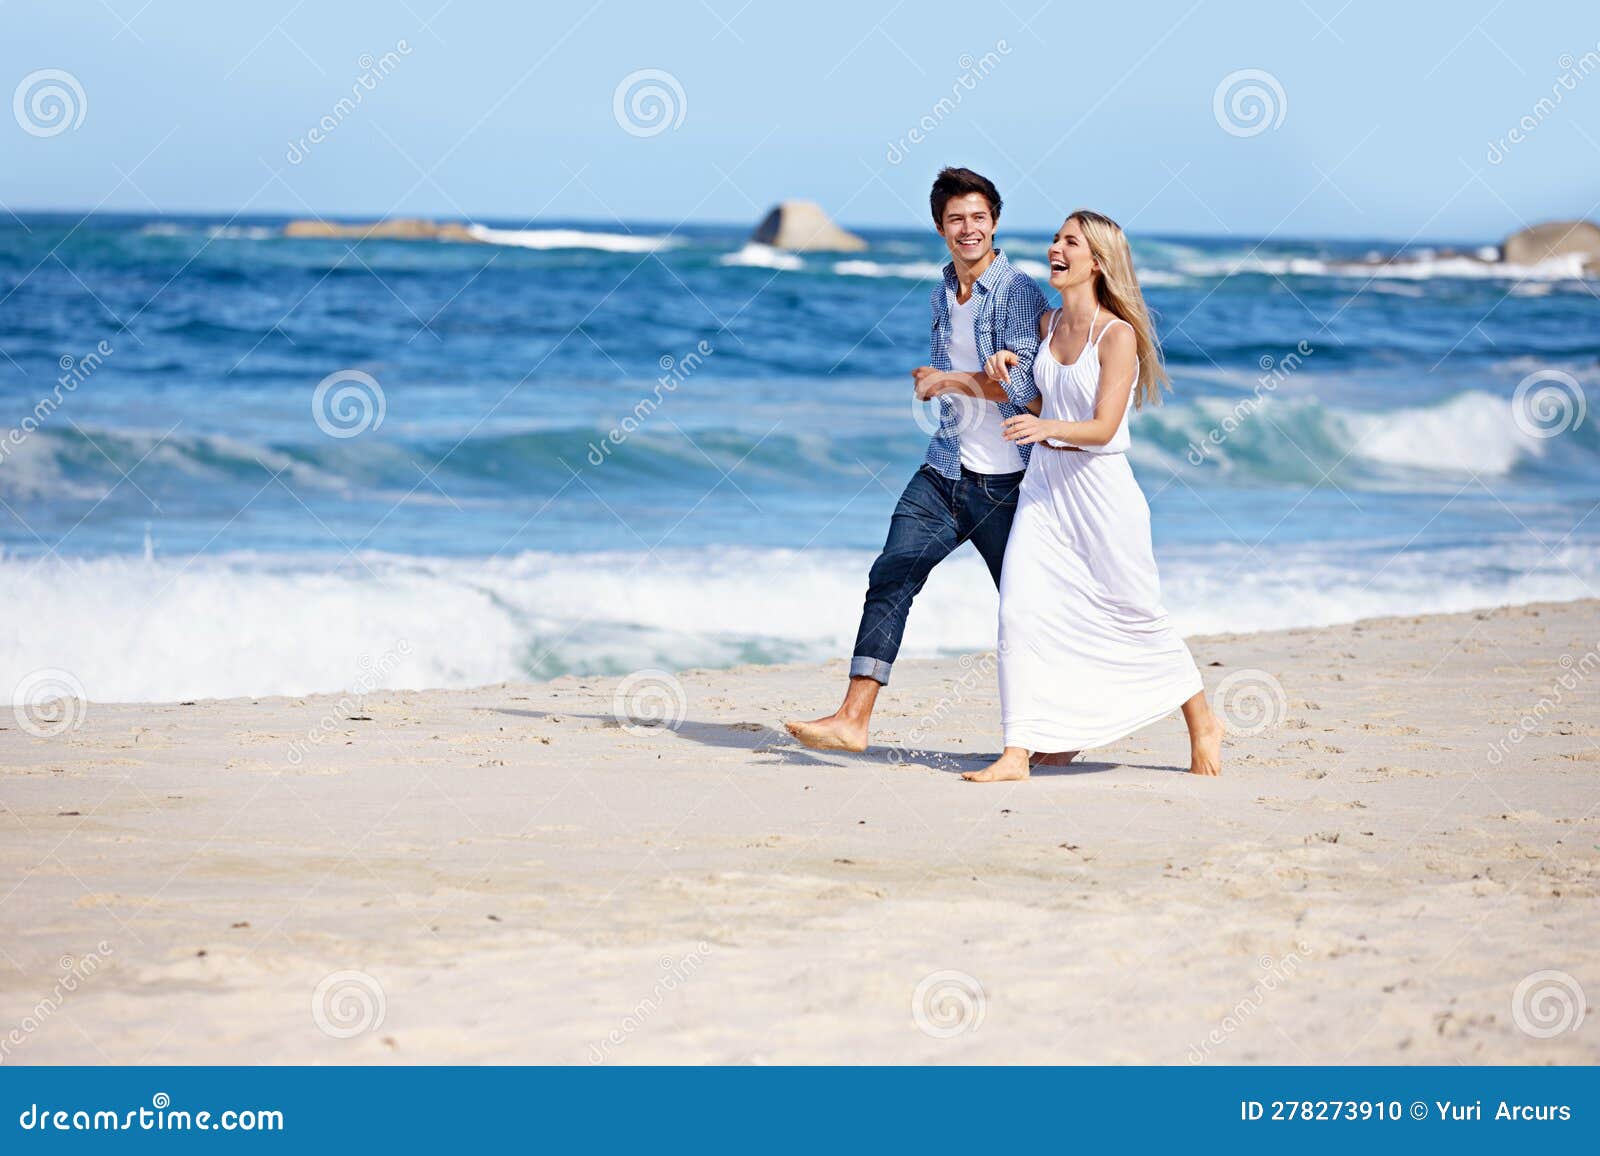 honeymooners beach